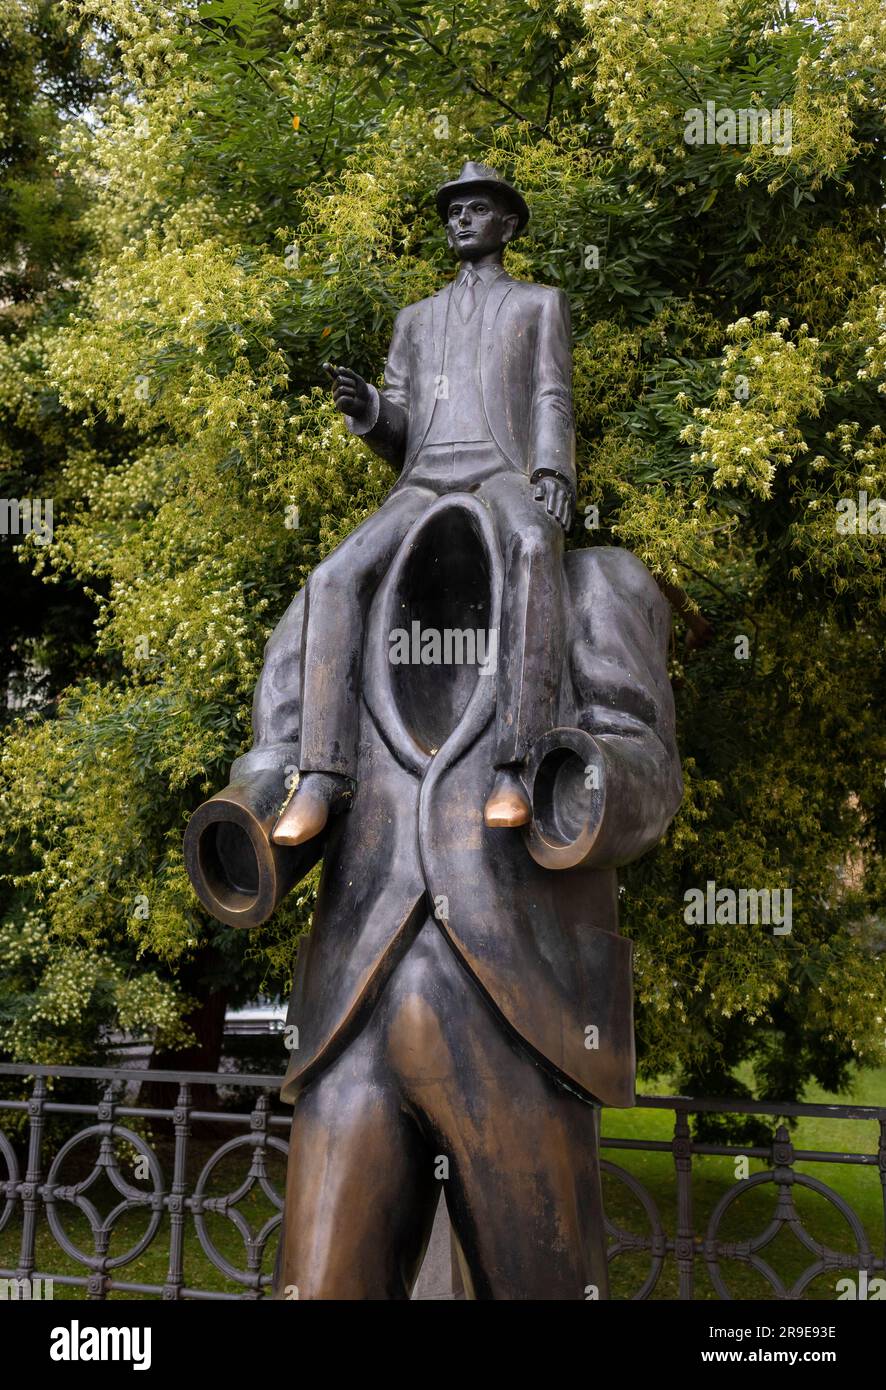 PRAG, TSCHECHISCHE REPUBLIK, EUROPA - Statue des Autors Franz Kafka vom Künstler Jaroslav Rona im jüdischen Viertel. Stockfoto